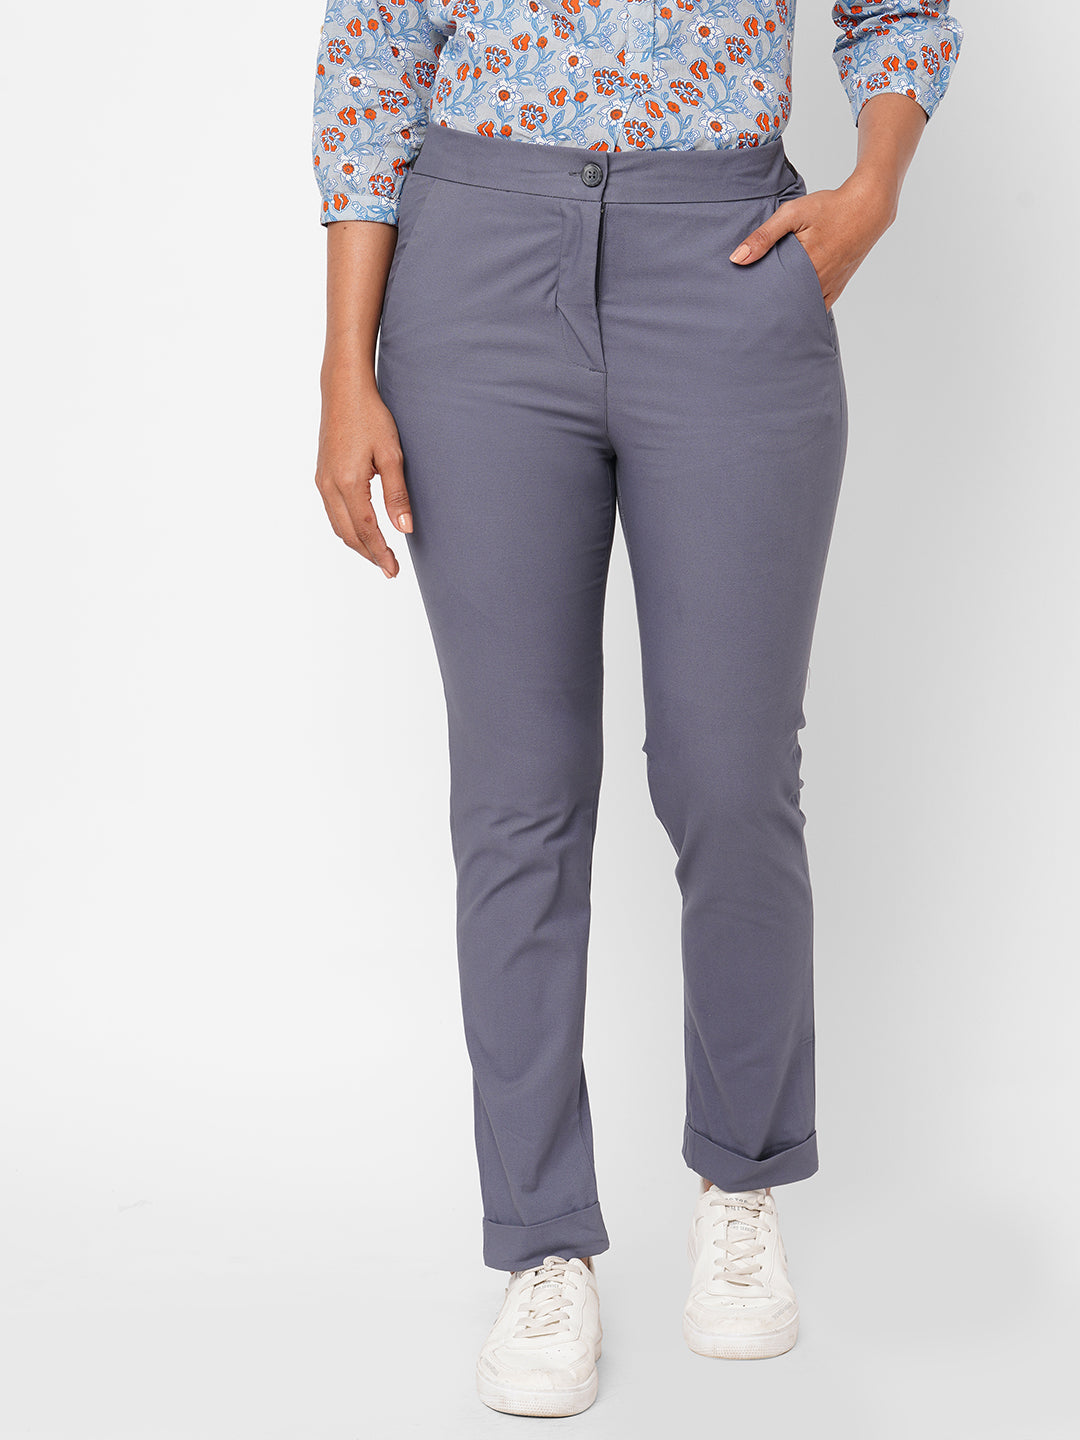 Women's Cotton Lurex Blue Slim Fit Pant